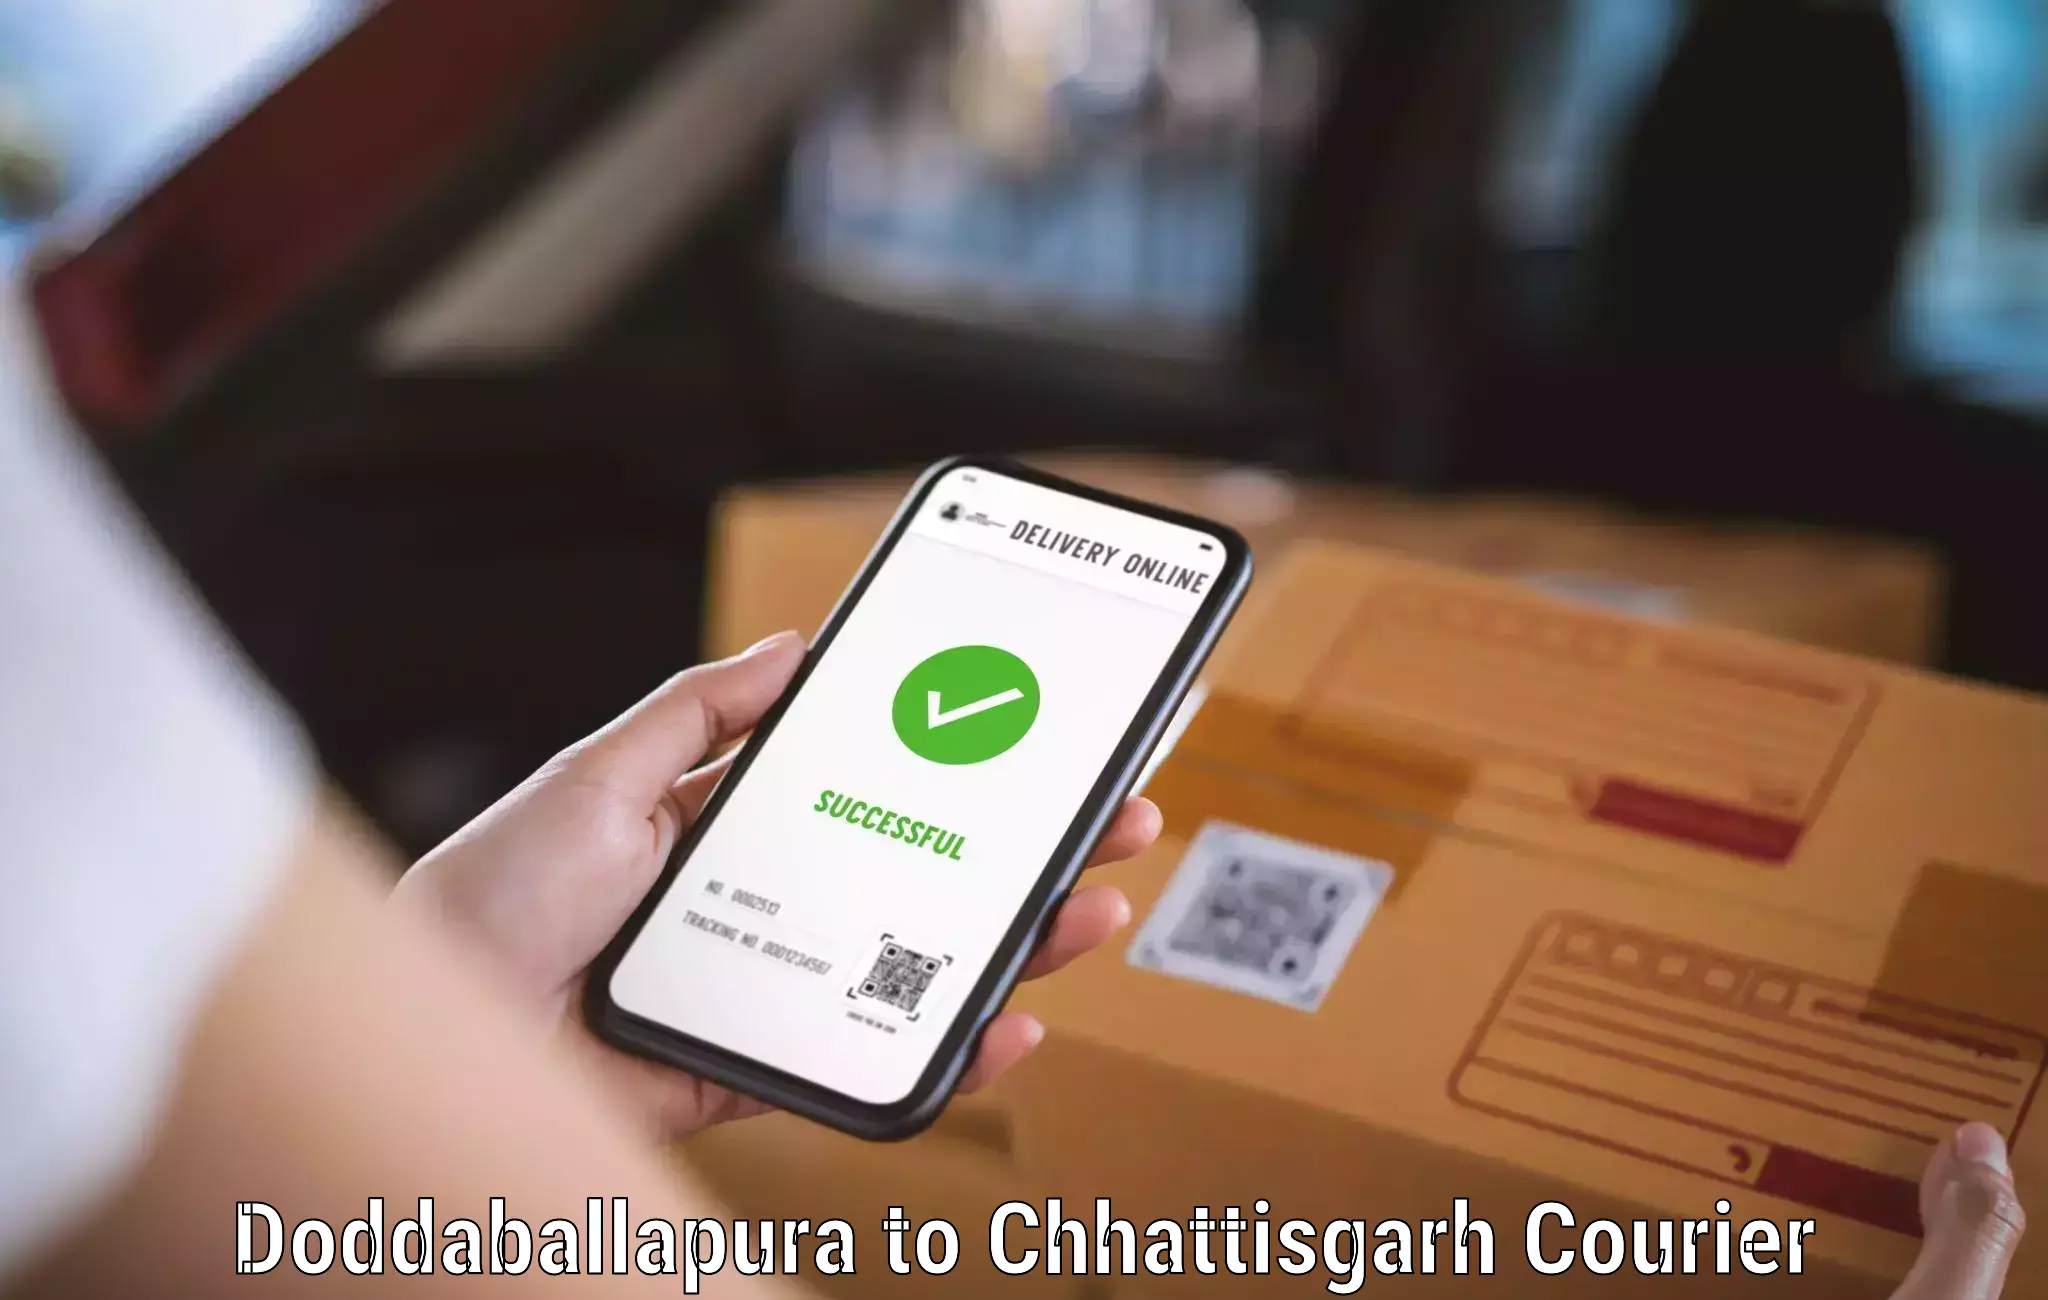 Reliable courier service Doddaballapura to Chhattisgarh